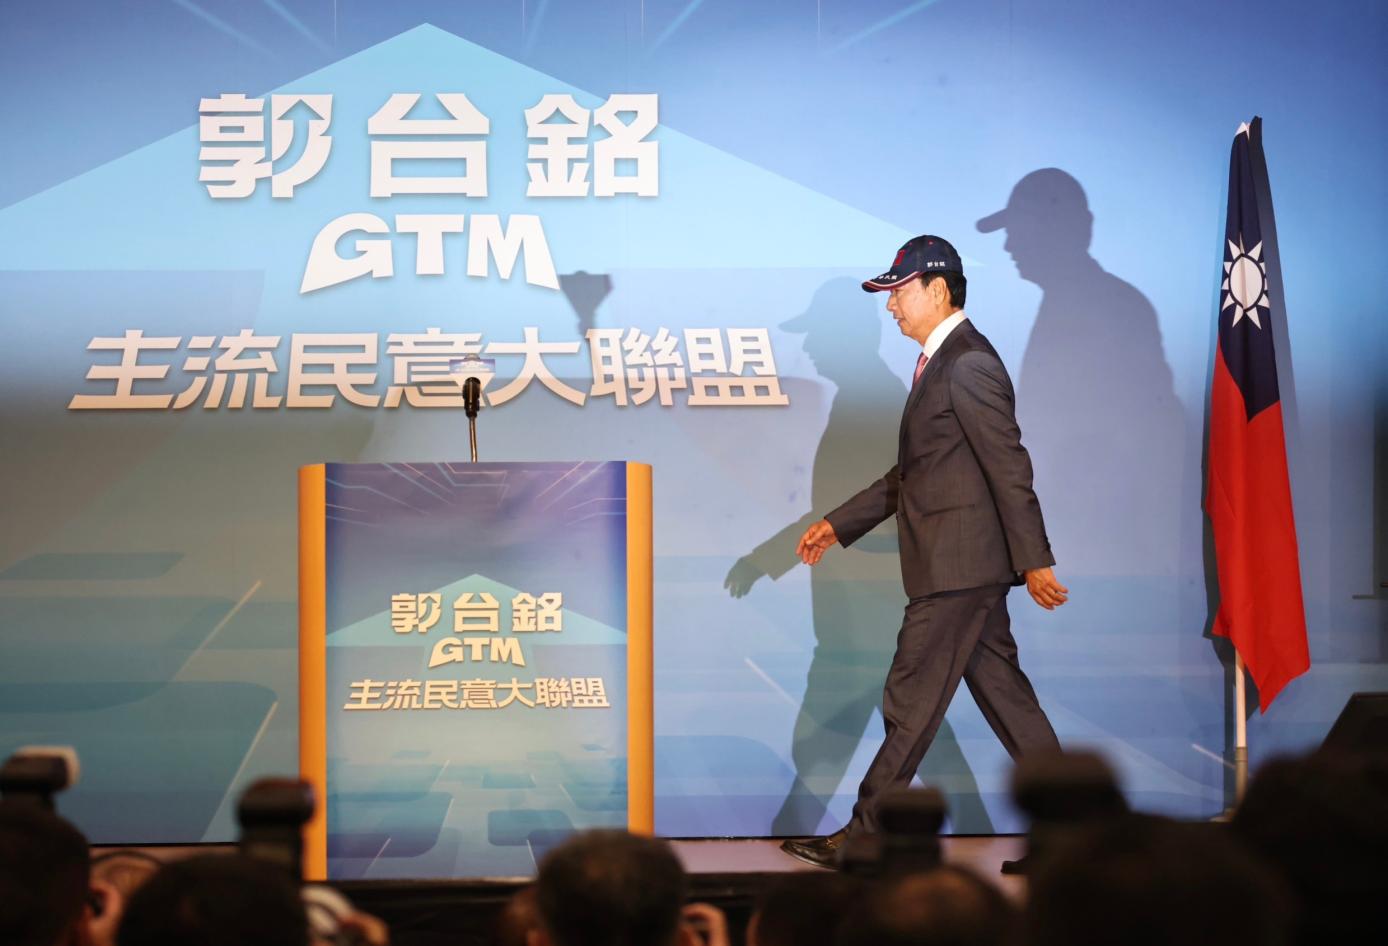 鴻海創辦人郭台銘宣布參選總統。林啟弘攝